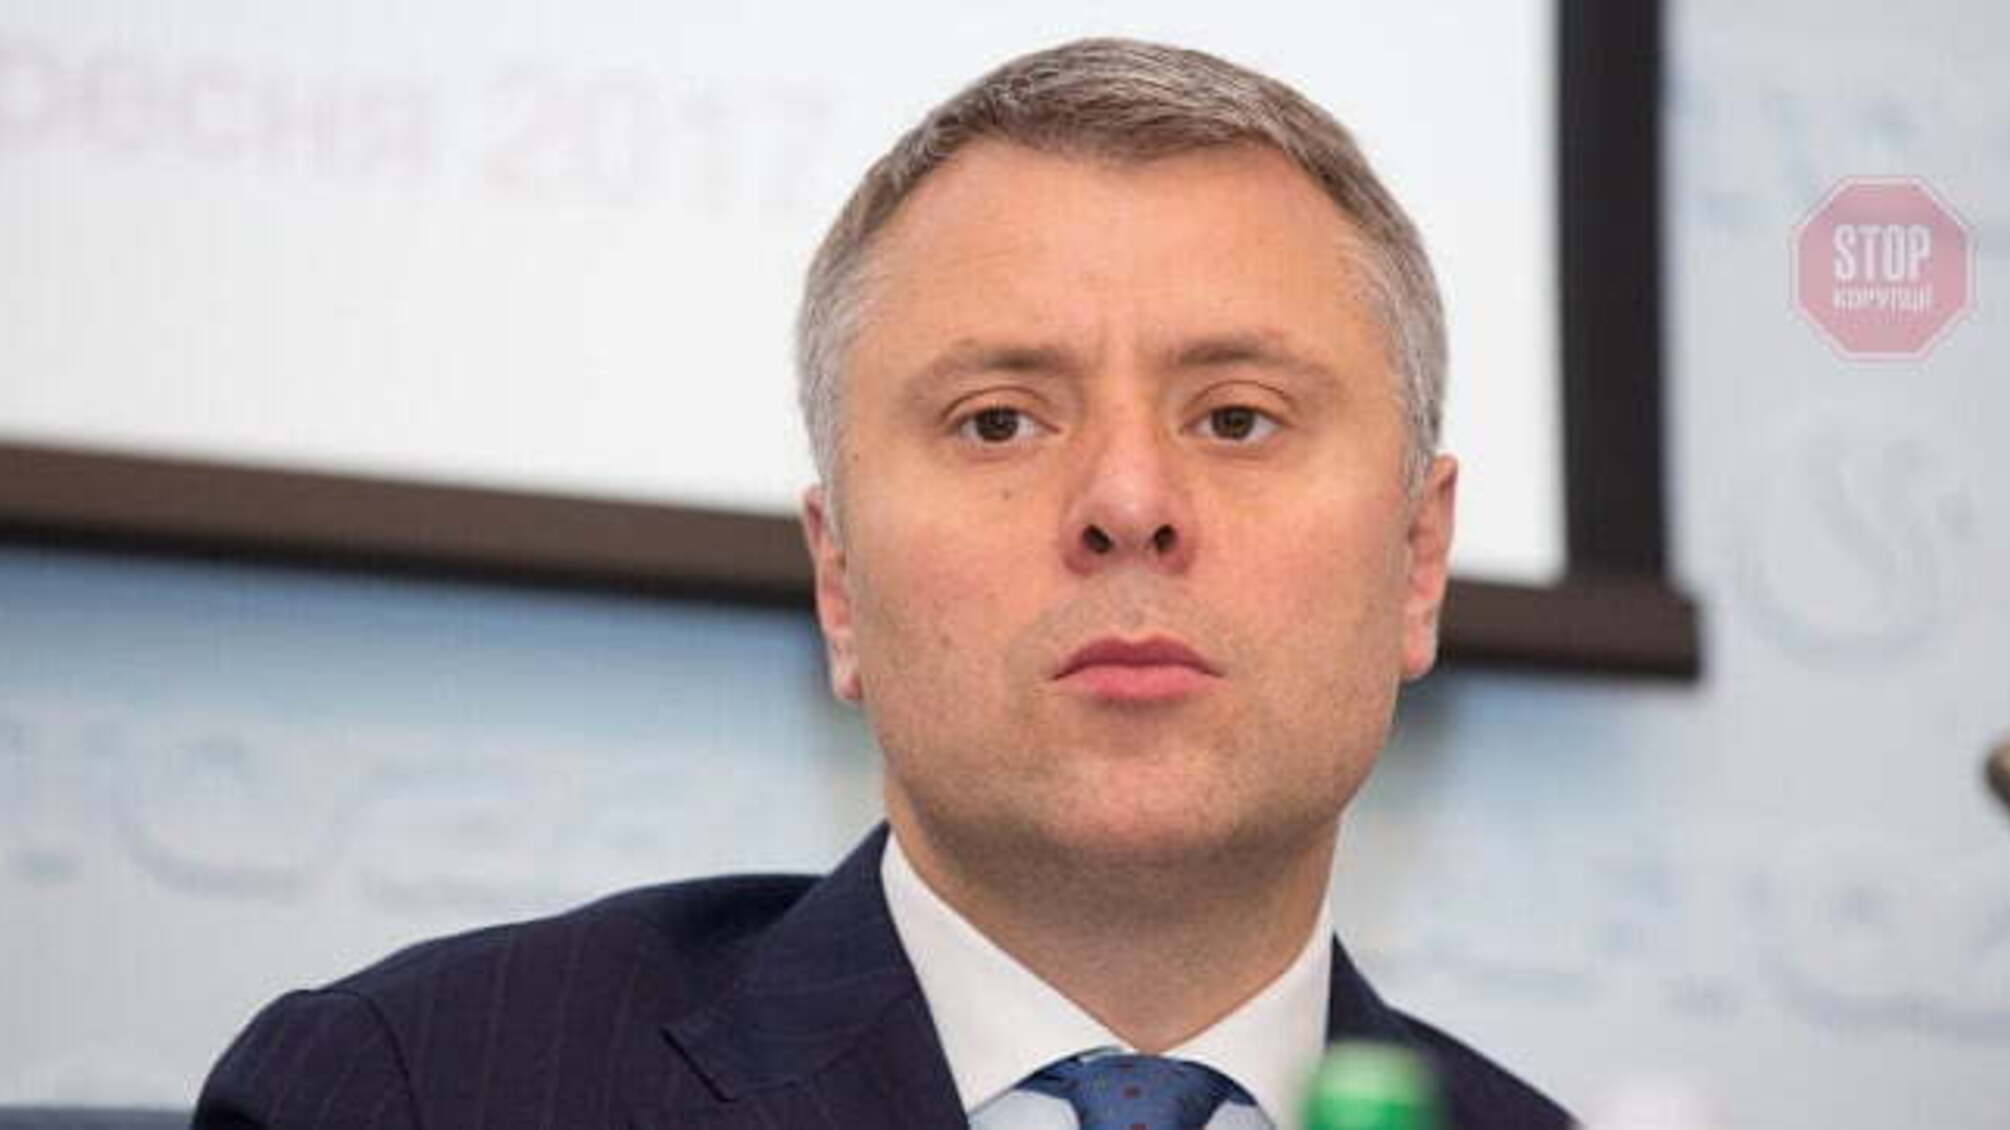 Вітренко заявив, що Україна незабаром припинить імпорт електроенергії з РФ і Білорусі